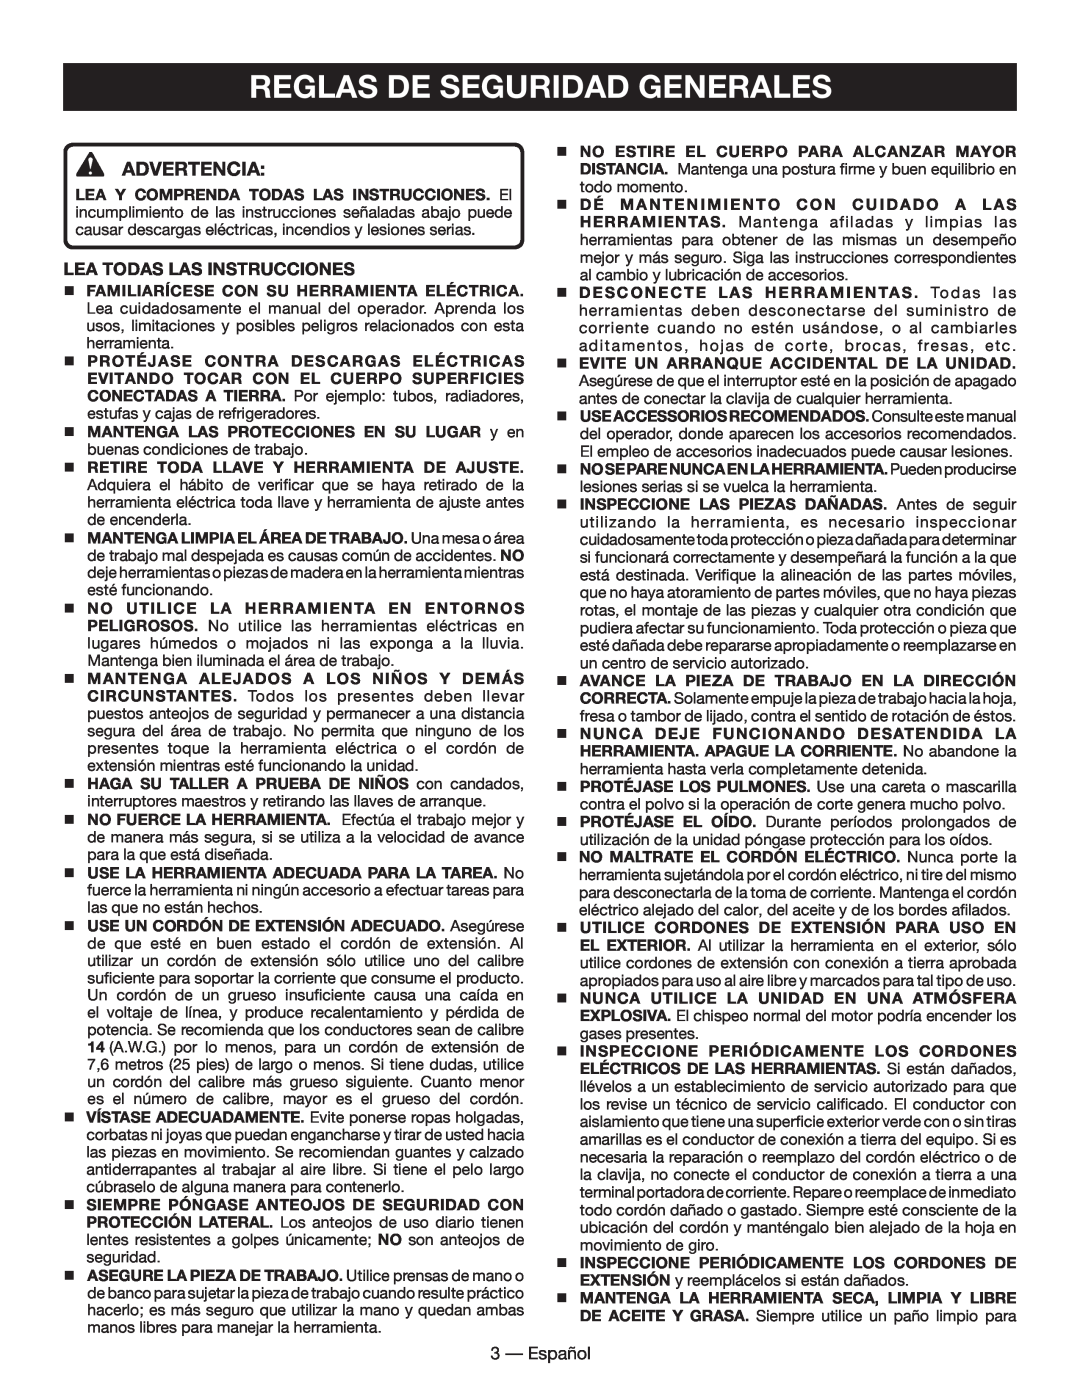 Homelite UT49102 manuel dutilisation Reglas De Seguridad Generales, Advertencia 